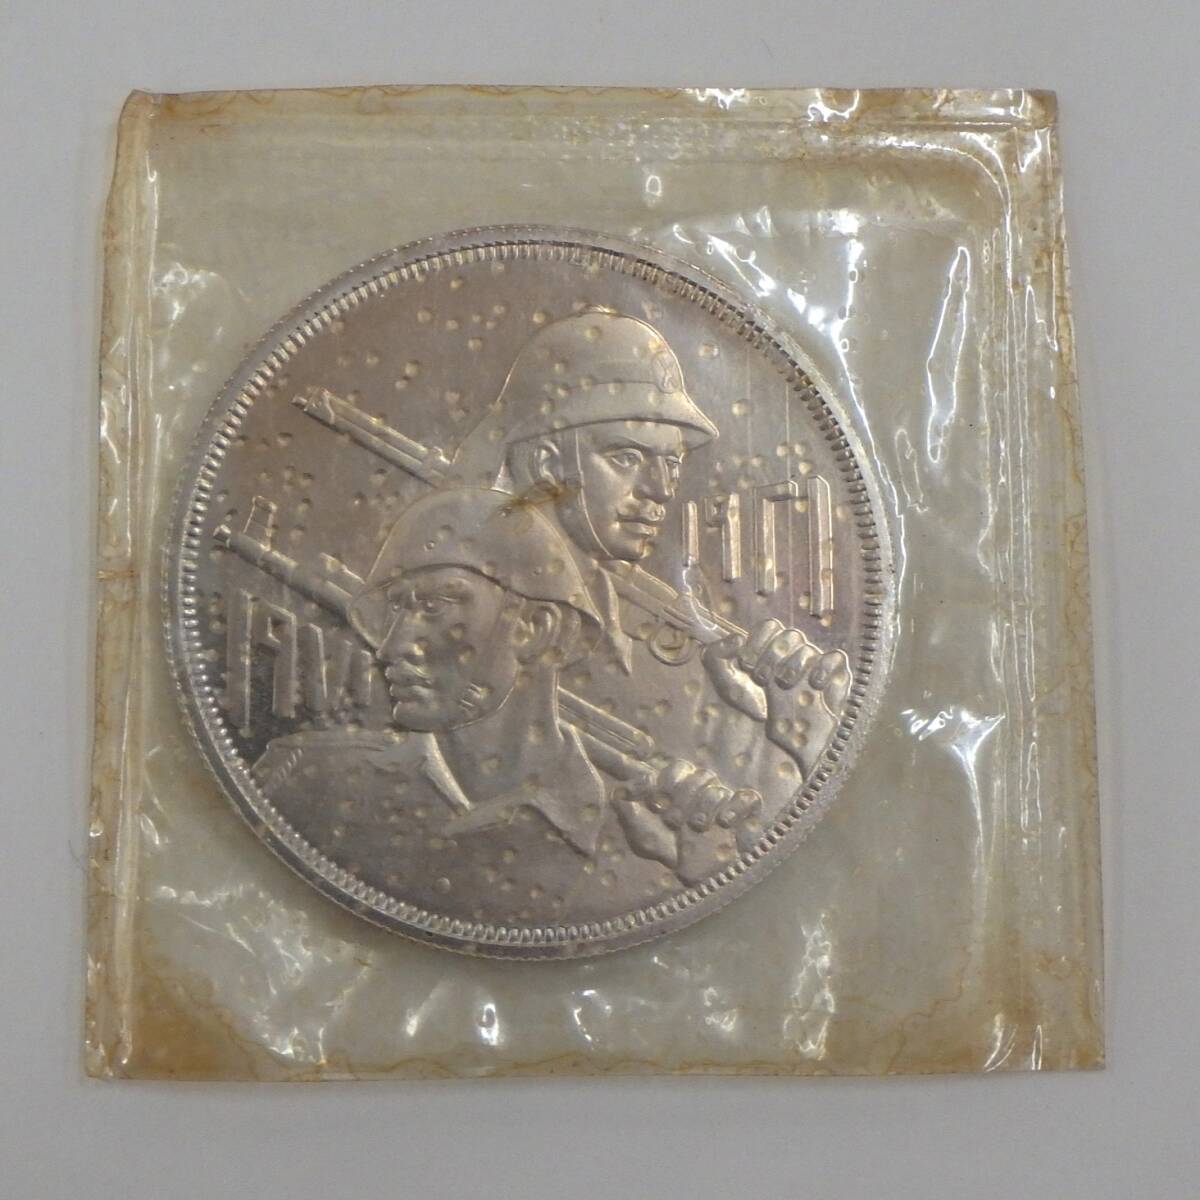 ◇イラク 大型銀貨◇1971年 1ディナール銀貨 GOLDEN JUBILEE OF IRAQI ARMY 約4cm 約31.8g(カバー含)   ケース入の画像2